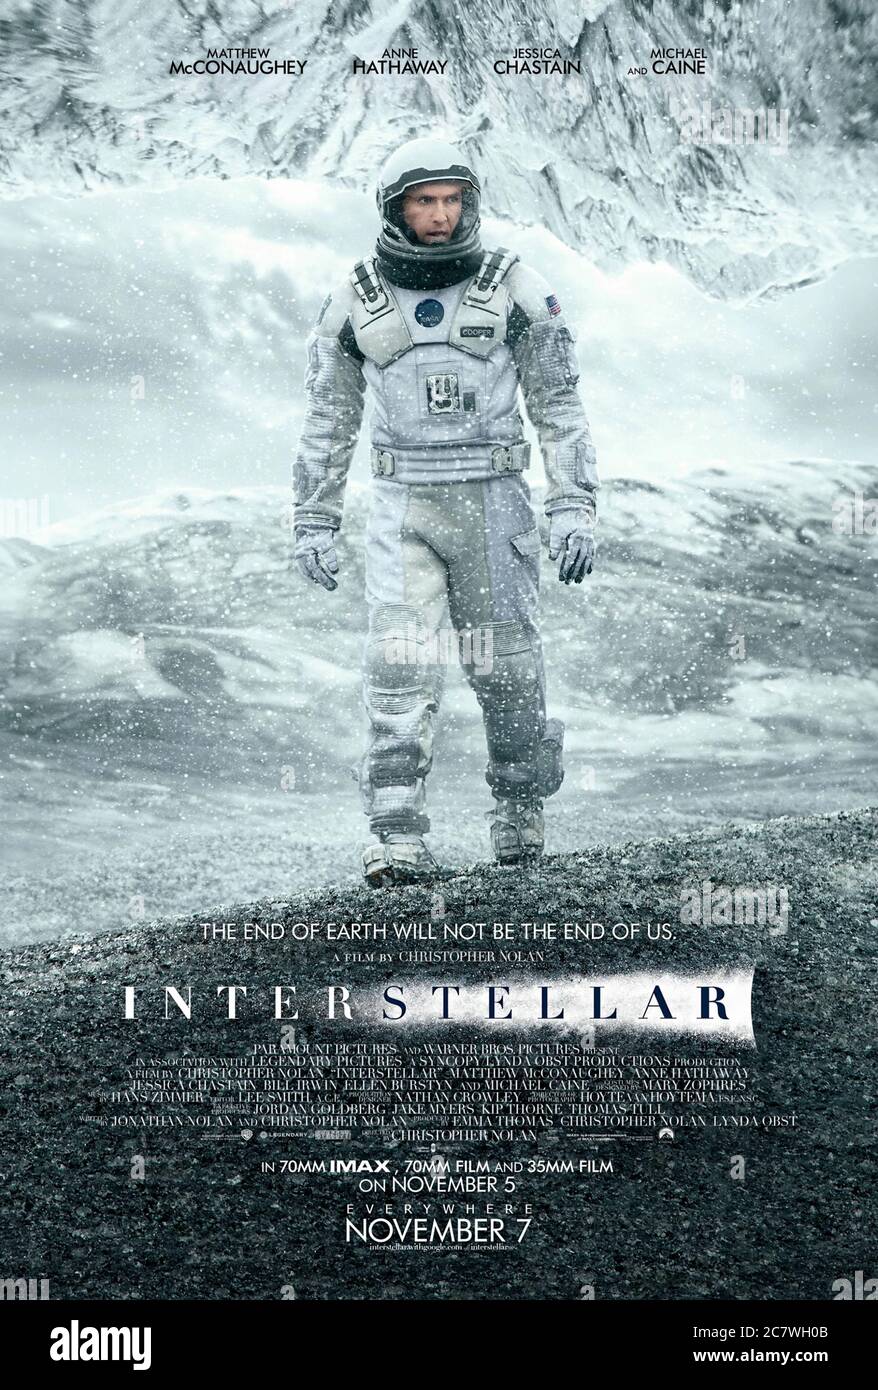 Interstellar (2014) diretto da Christopher Nolan e con Matthew McConaughey, Anne Hathaway, Jessica Chastain e John Lithgow. In un futuro distopico astronauti esplorare un buco di parole nello spazio alla ricerca di una nuova casa per l'umanità in una galassia lontana. Foto Stock